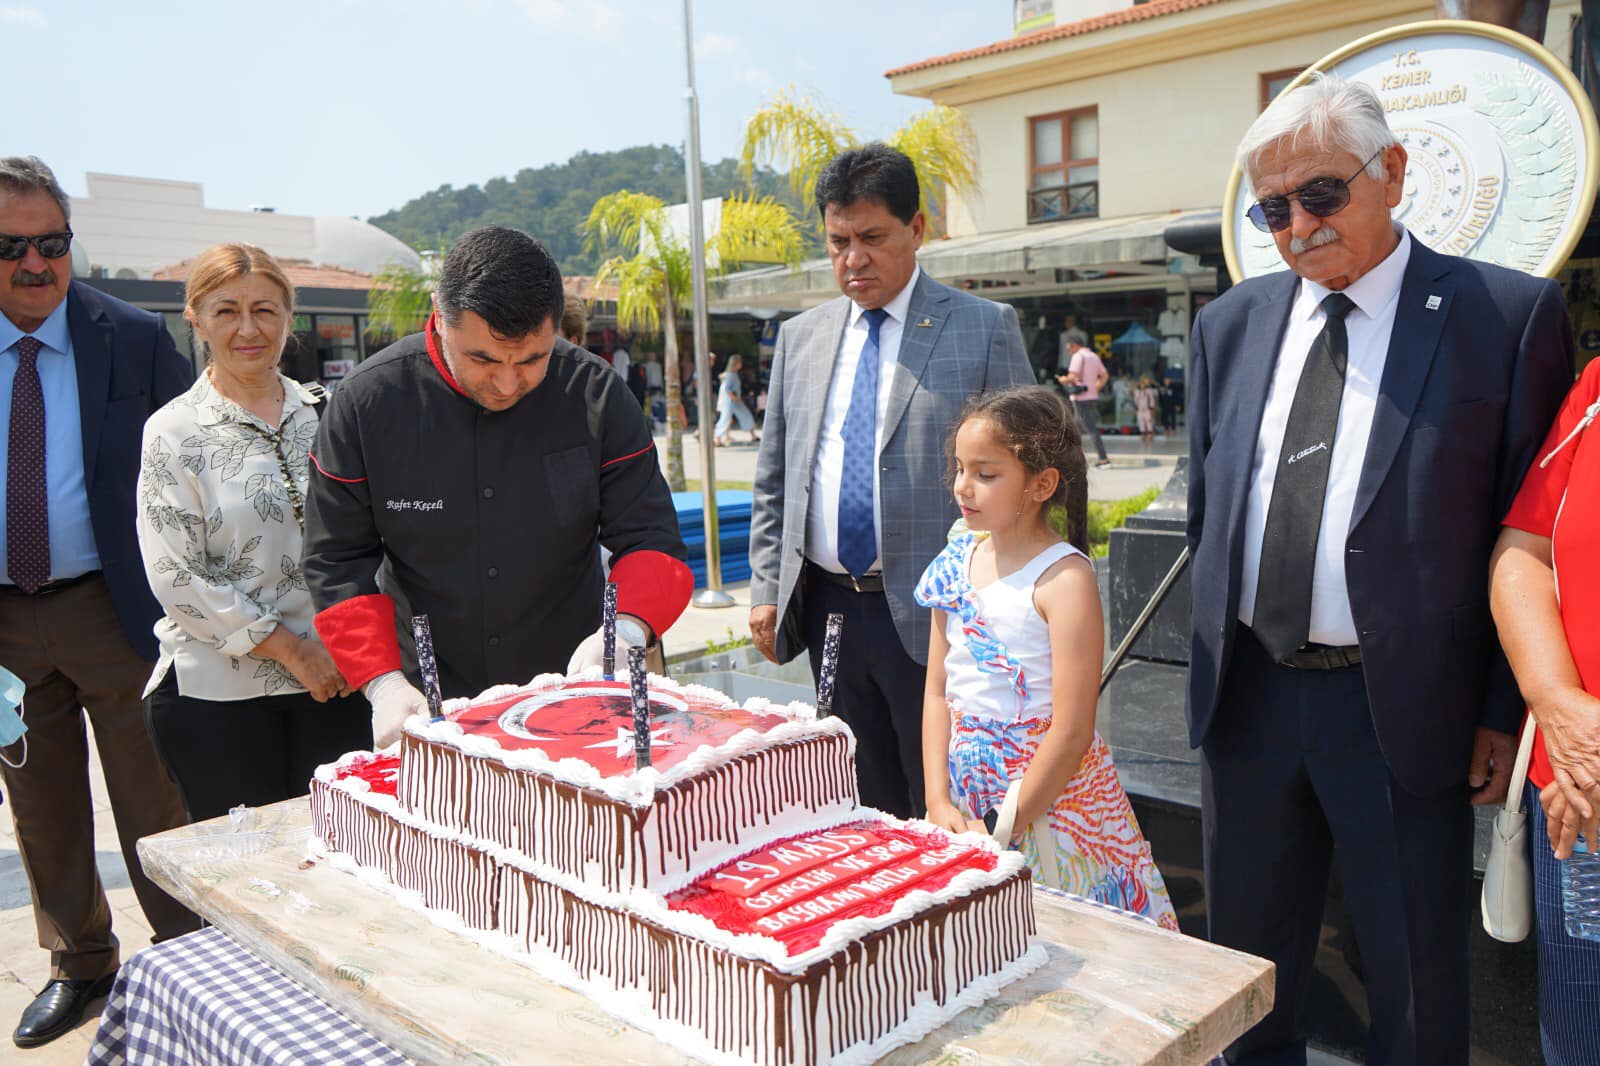 Mustafa Gül’den 19 mayıs’ta geleneksel pasta  kesimi